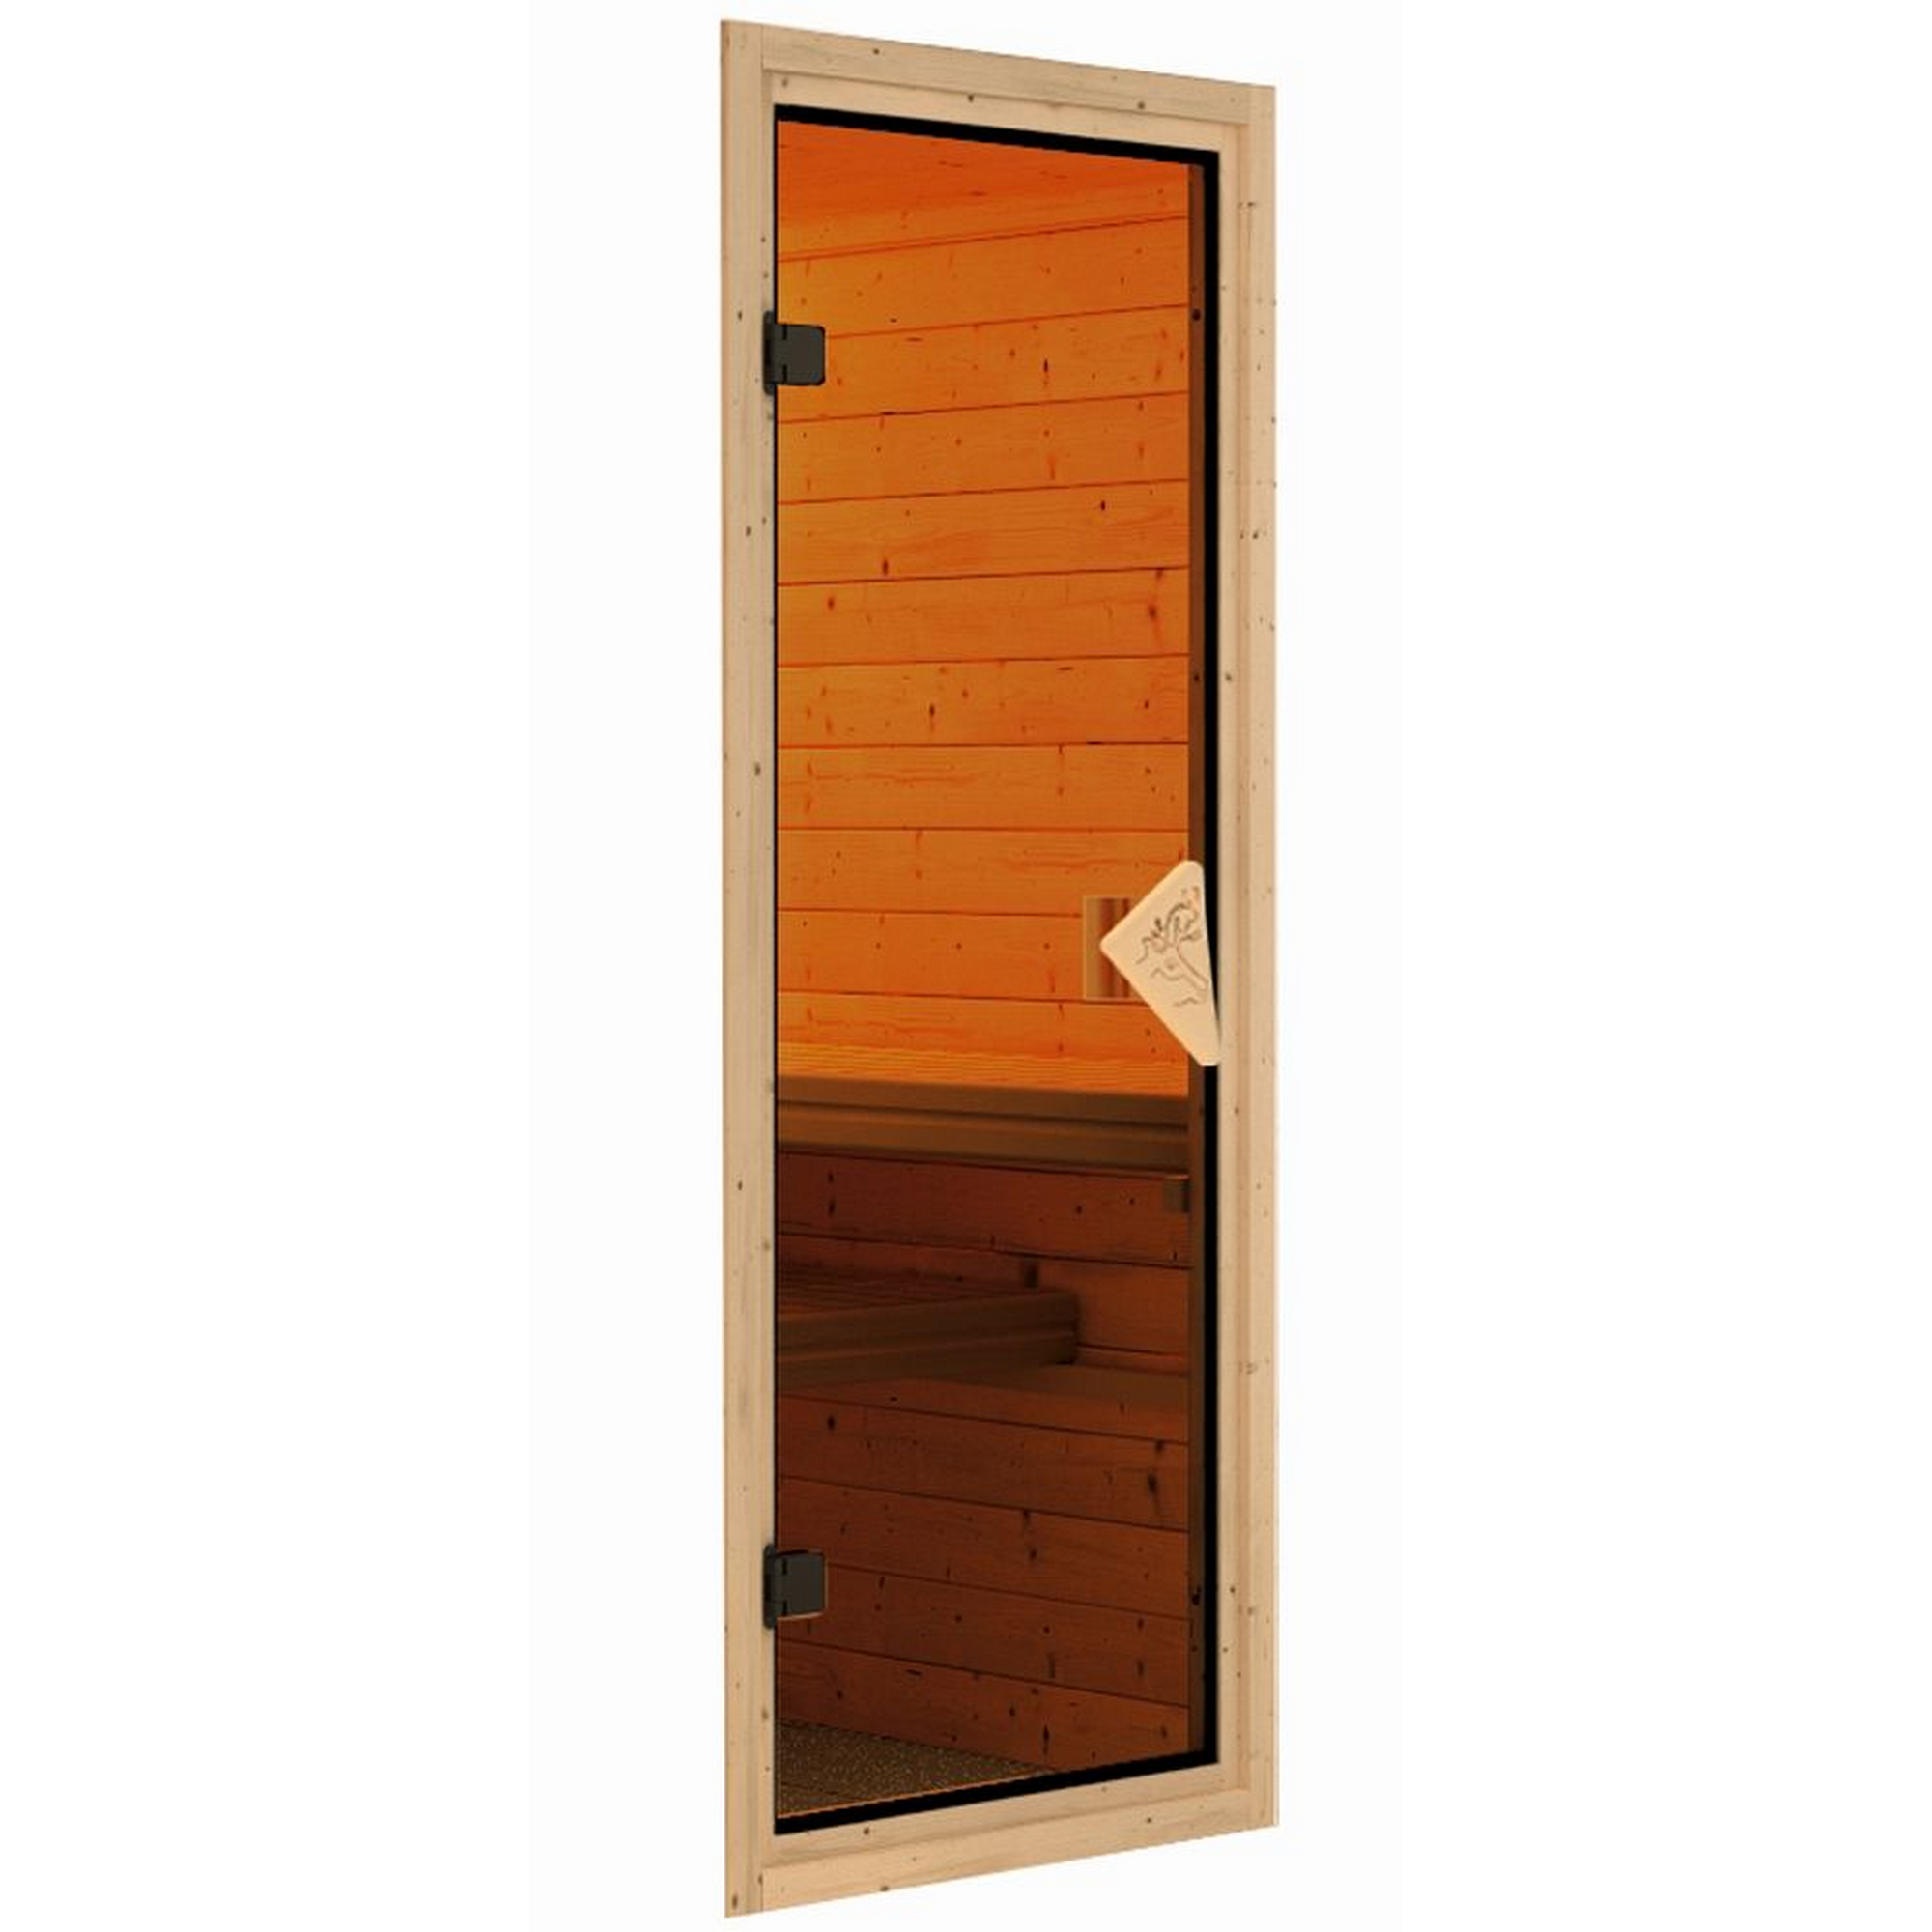 Sauna 'Aurelia 2' naturbelassen mit Kranz und bronzierter Tür 9 kW Ofen integrierte Steuerung 245 x 245 x 202 cm + product picture